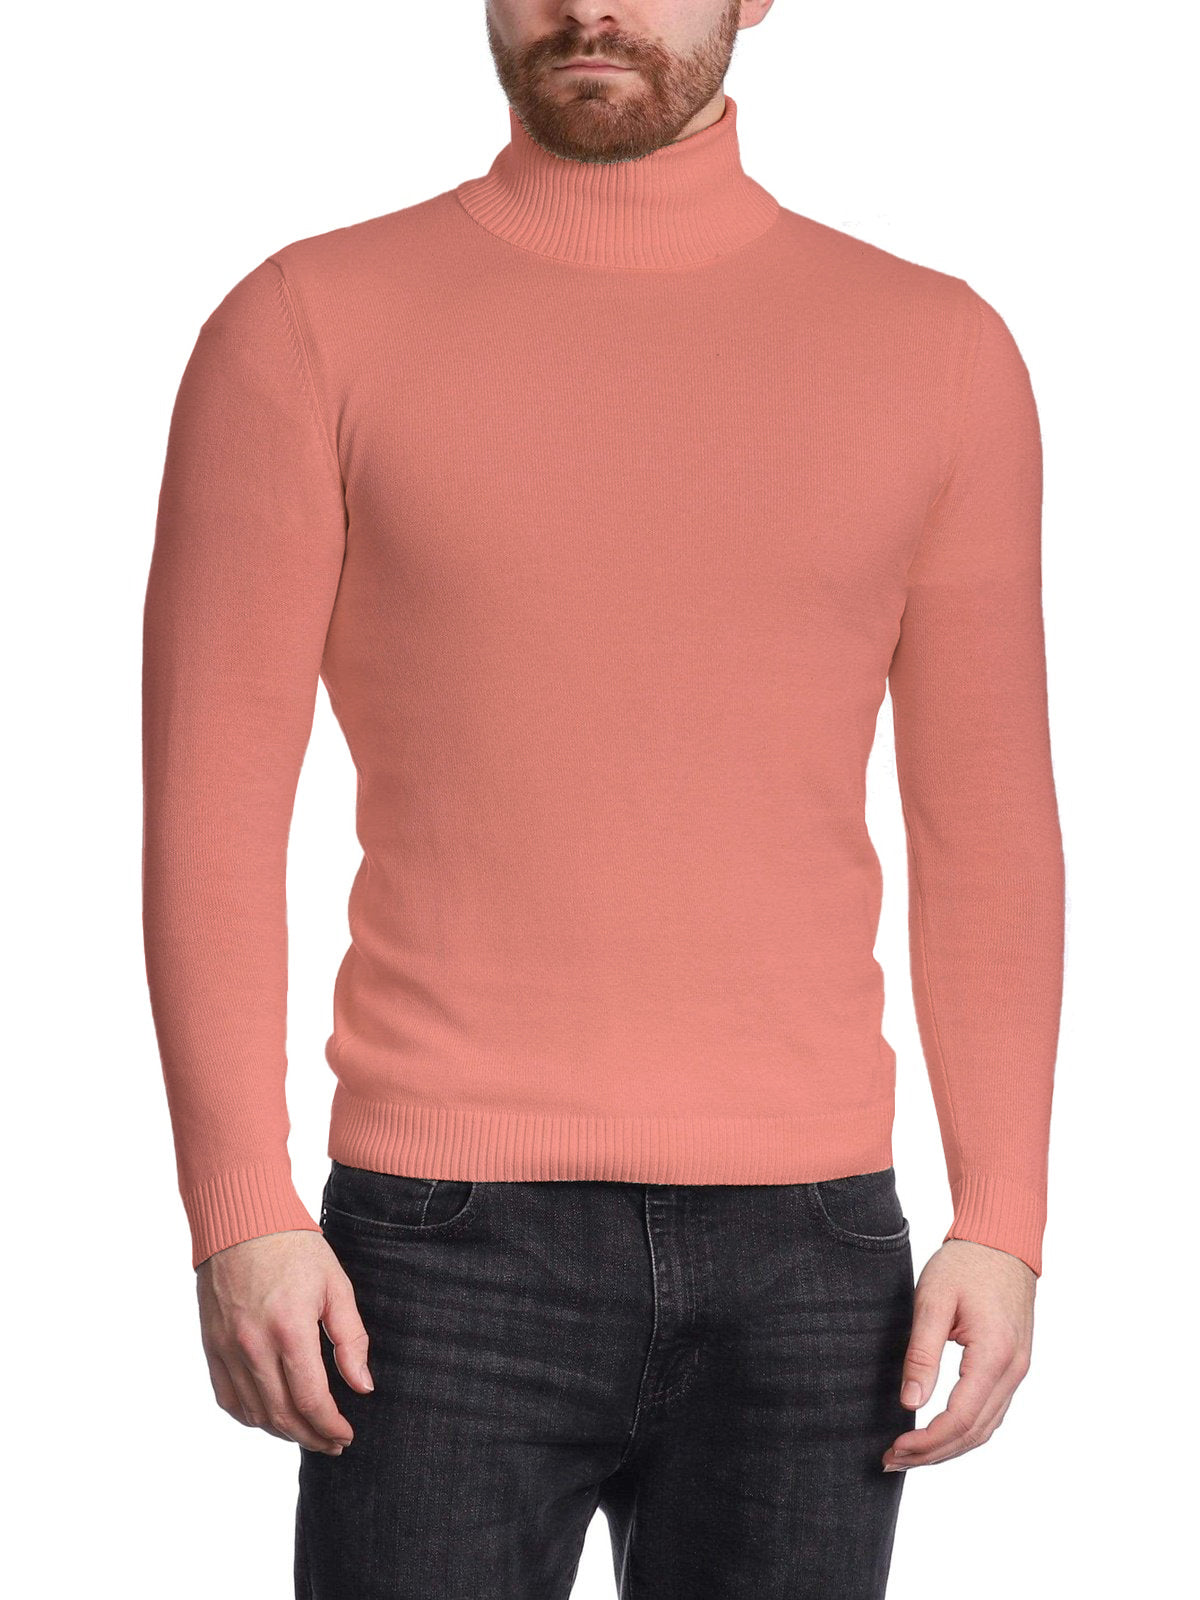 Arthur Black Men\'s Dusty Rose Pullover Cotton Blend Turtleneck Sweater  Shirt | The Suit Depot